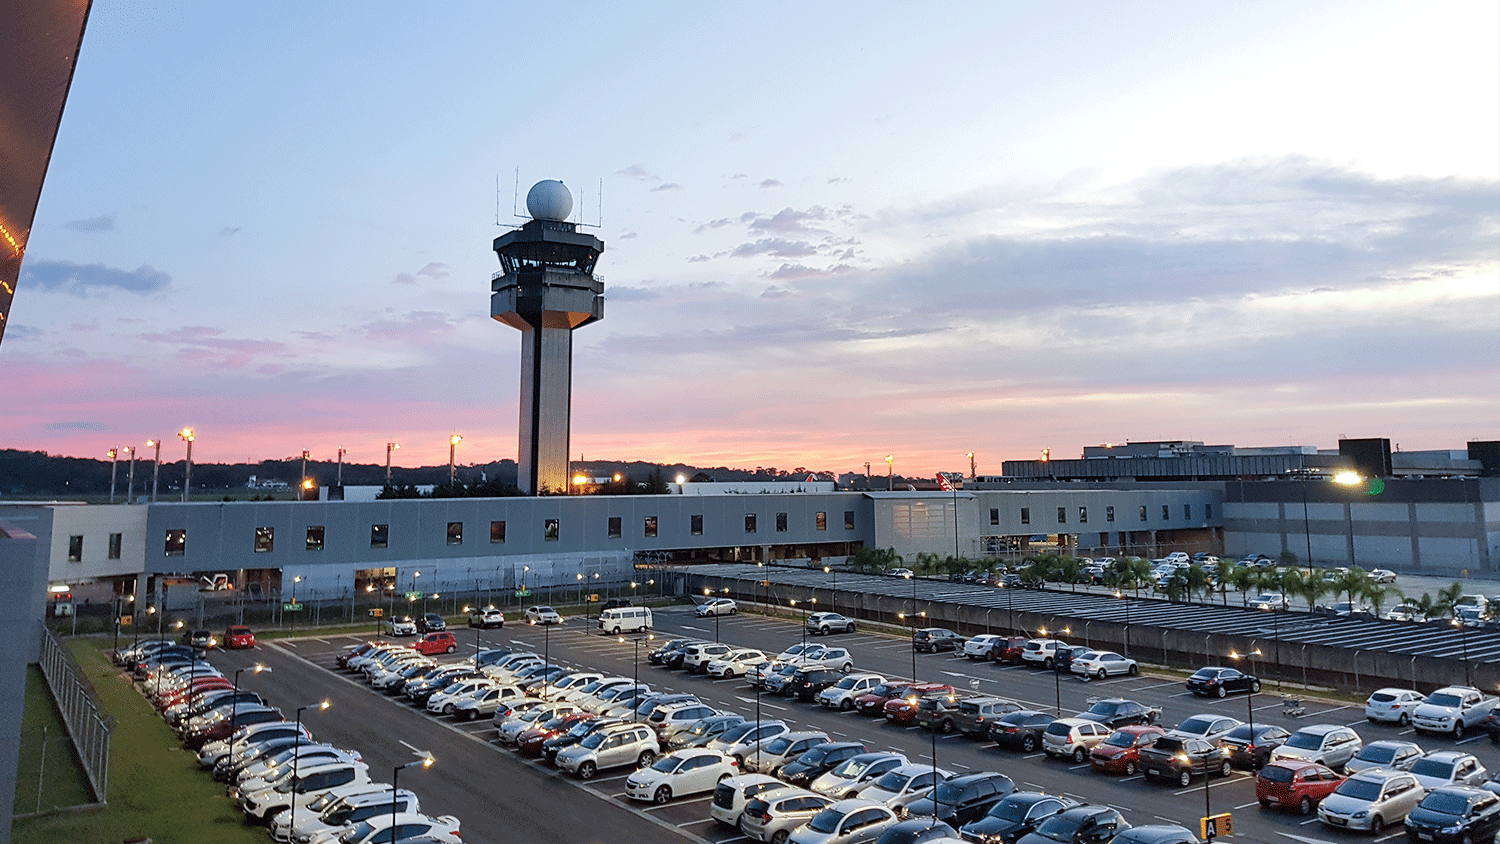 Flughafen-Parkplatz in der Abenddämmerung